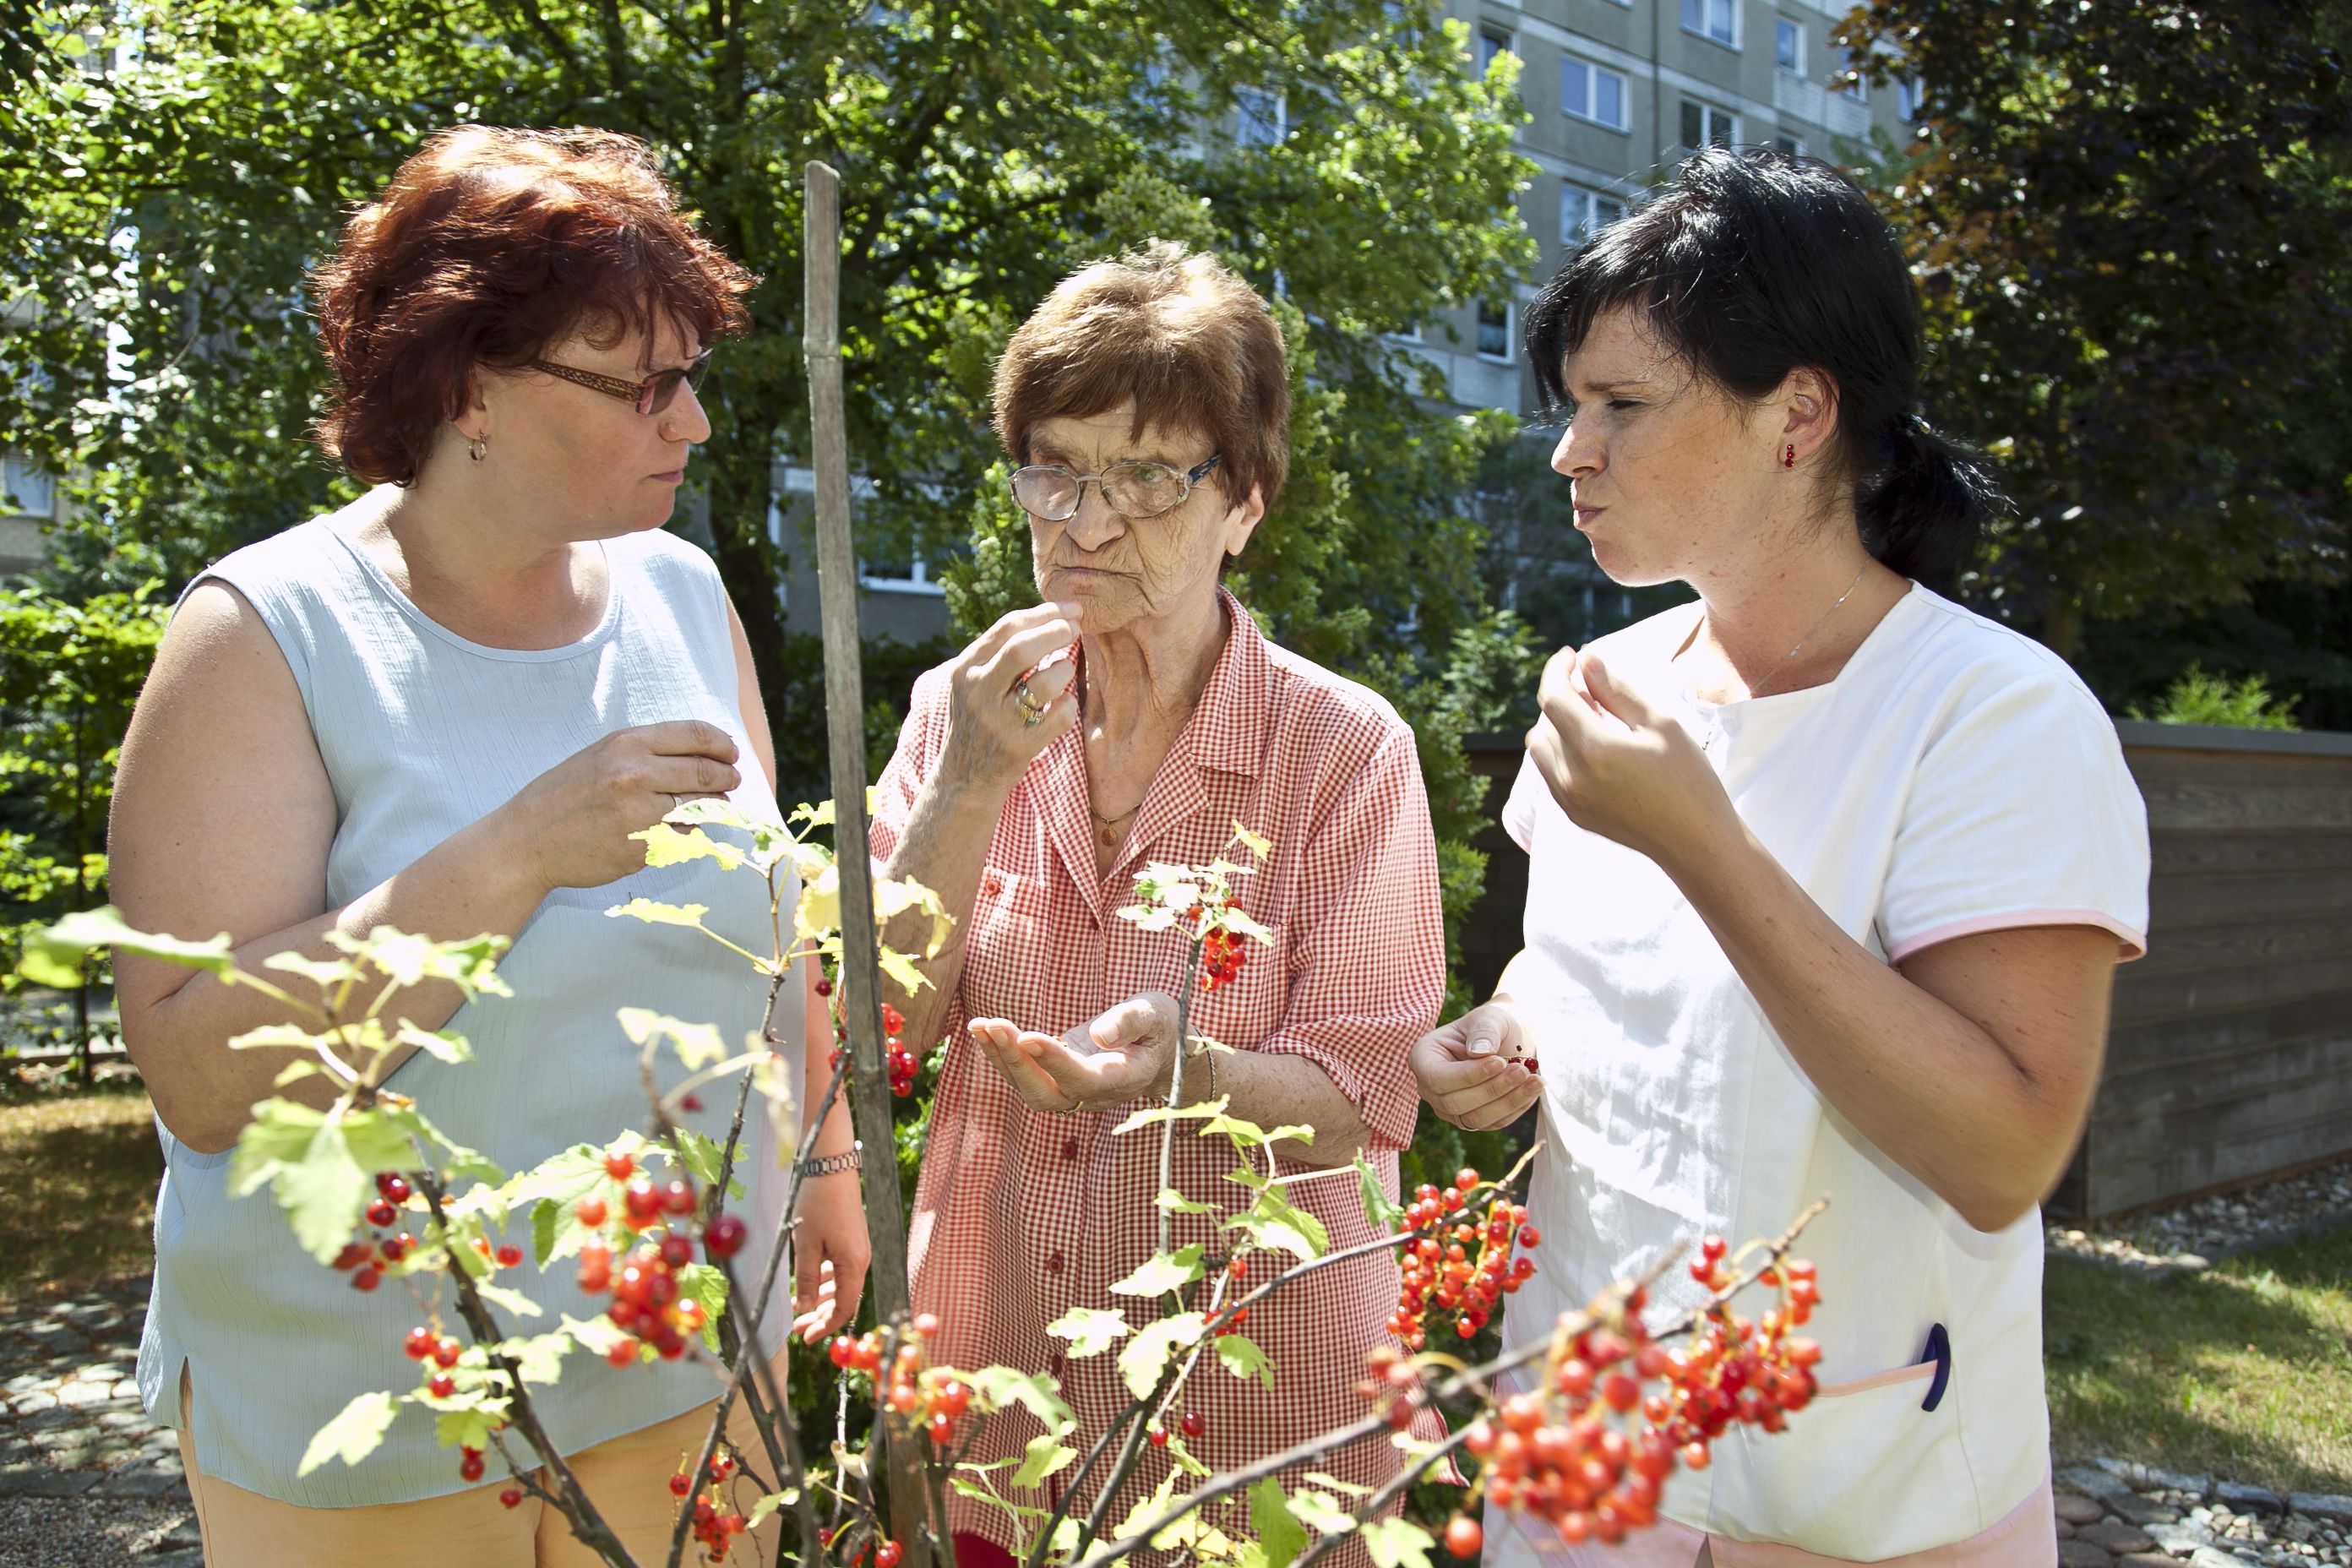 Drei Frauen stehen im Sommer im Garten und essen Johannisbeeren vom Strauch.